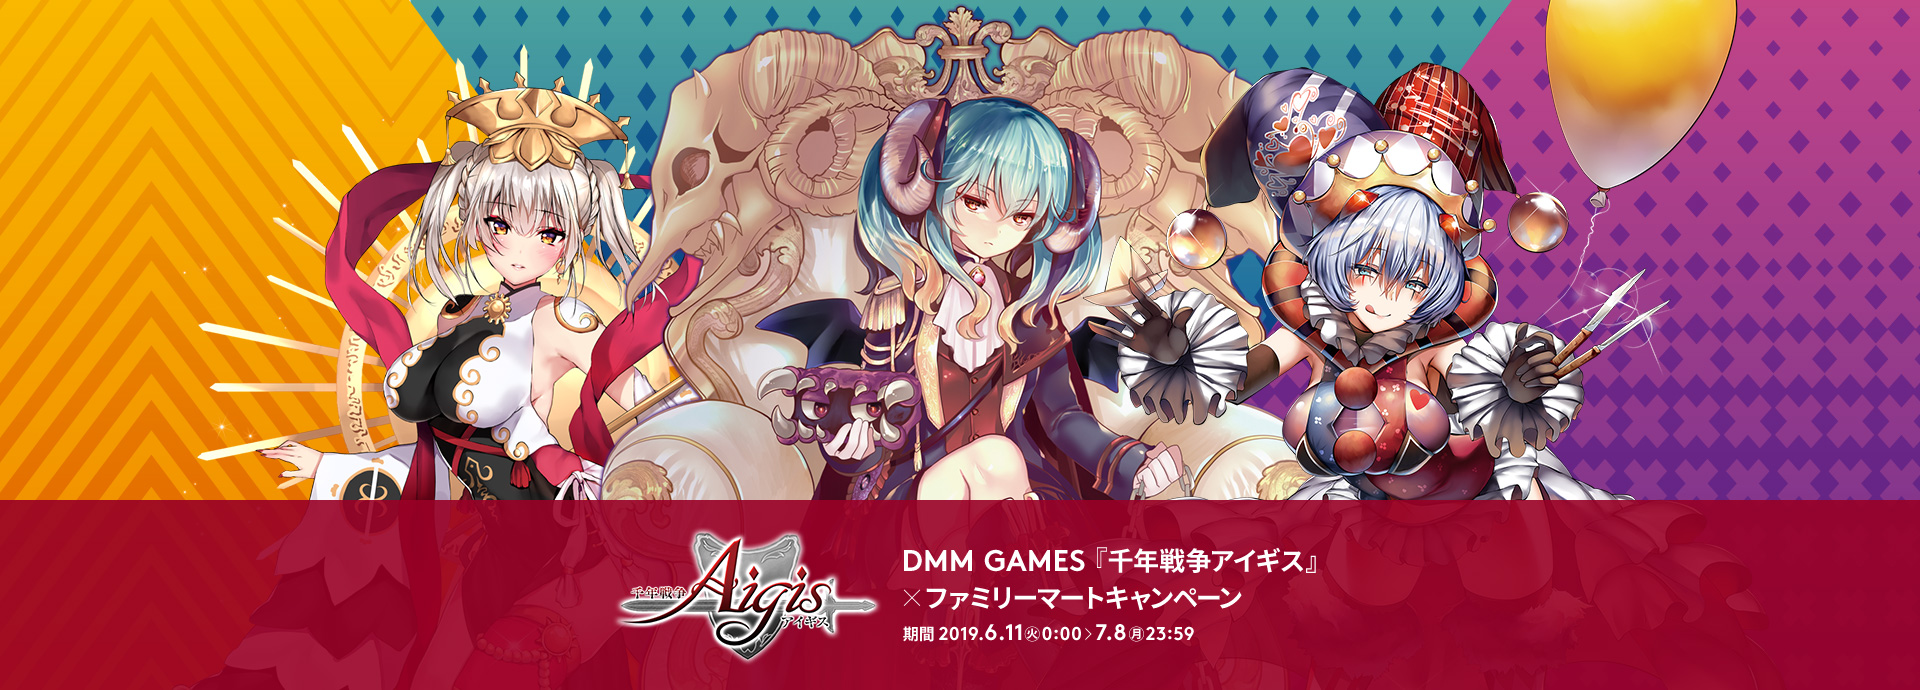 DMM GAMES「千年戦争アイギス」×ファミリーマートキャンペーン